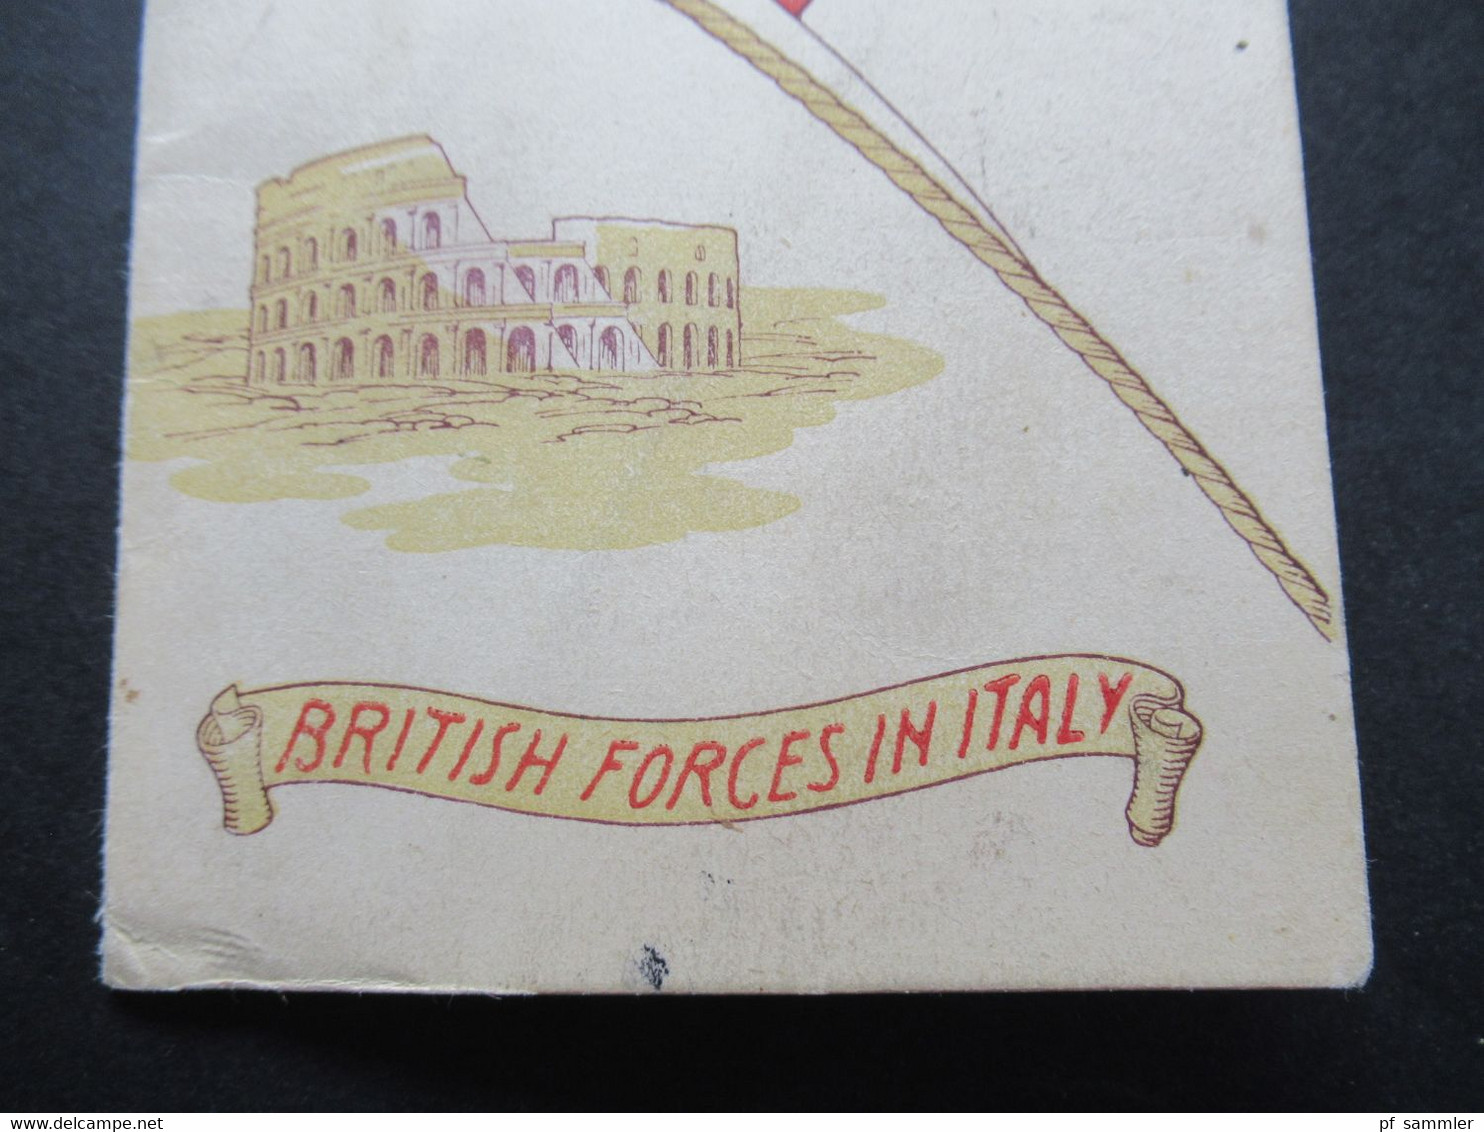 Klappkarte Mai 1945 Britische Propaganda Britisch Forces In Italy A Philatelic Souvenir Of Italy For Victory May 1945 - Propagande De Guerre